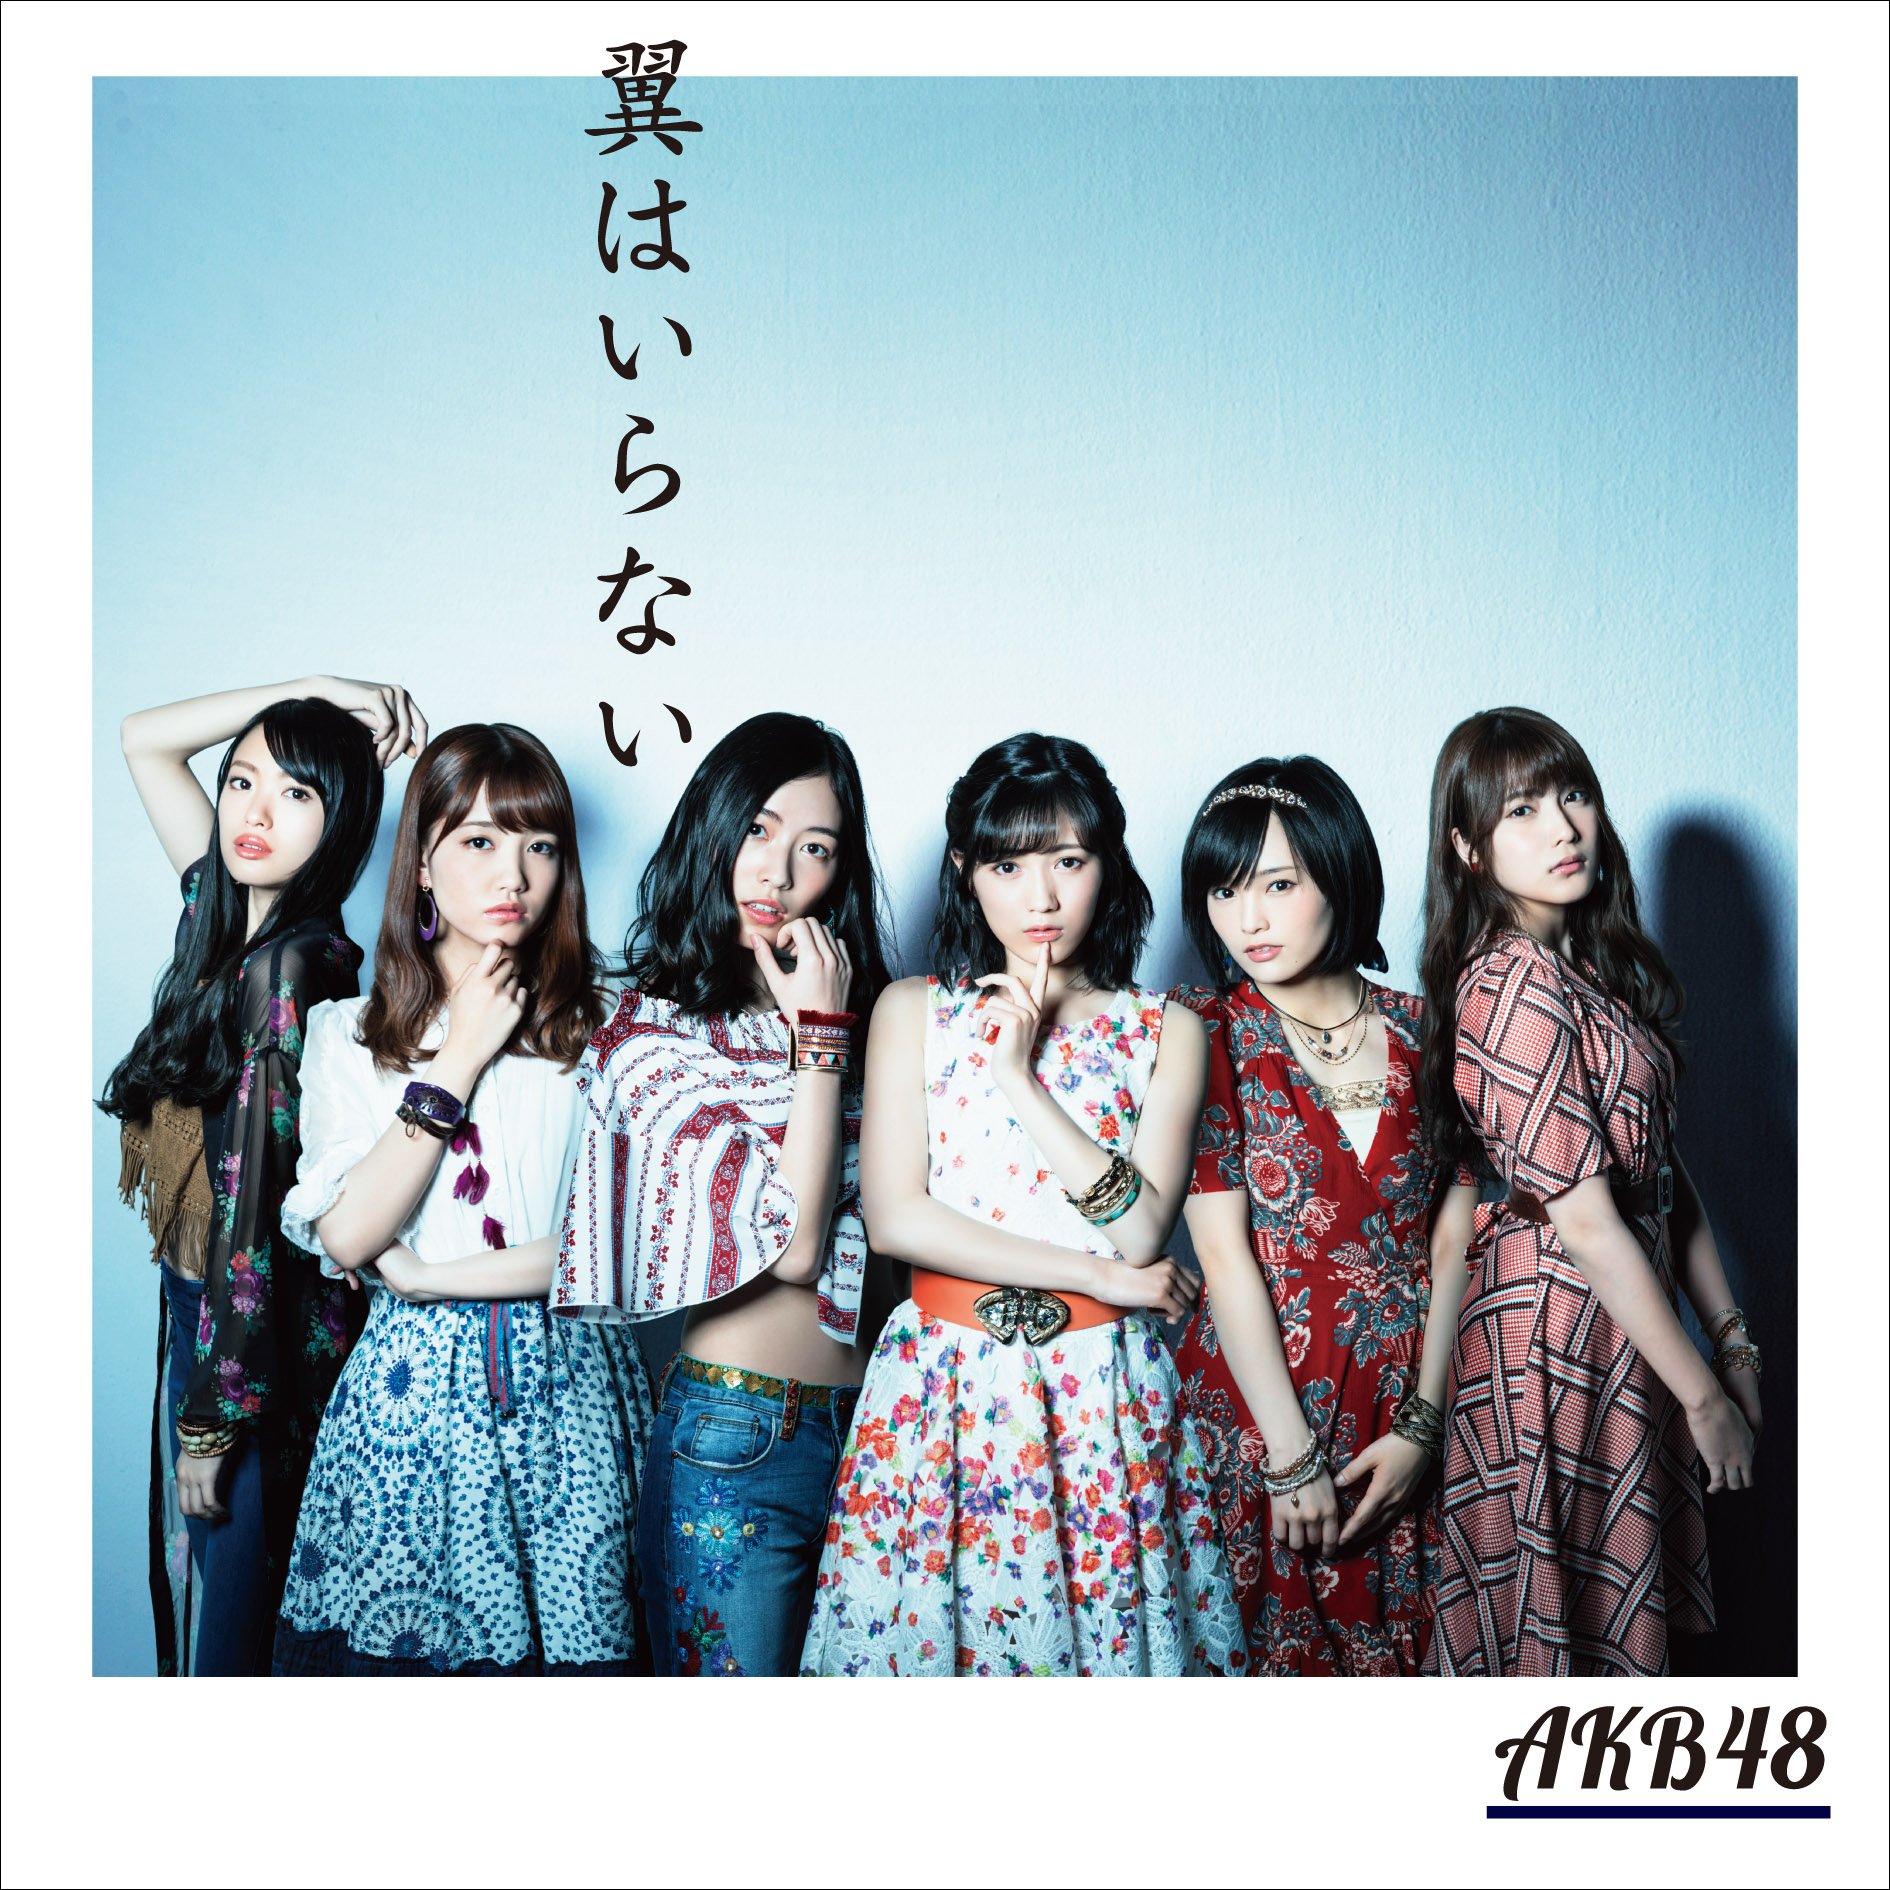 AKB48-Tsubasa-wa-Iranai-Cover